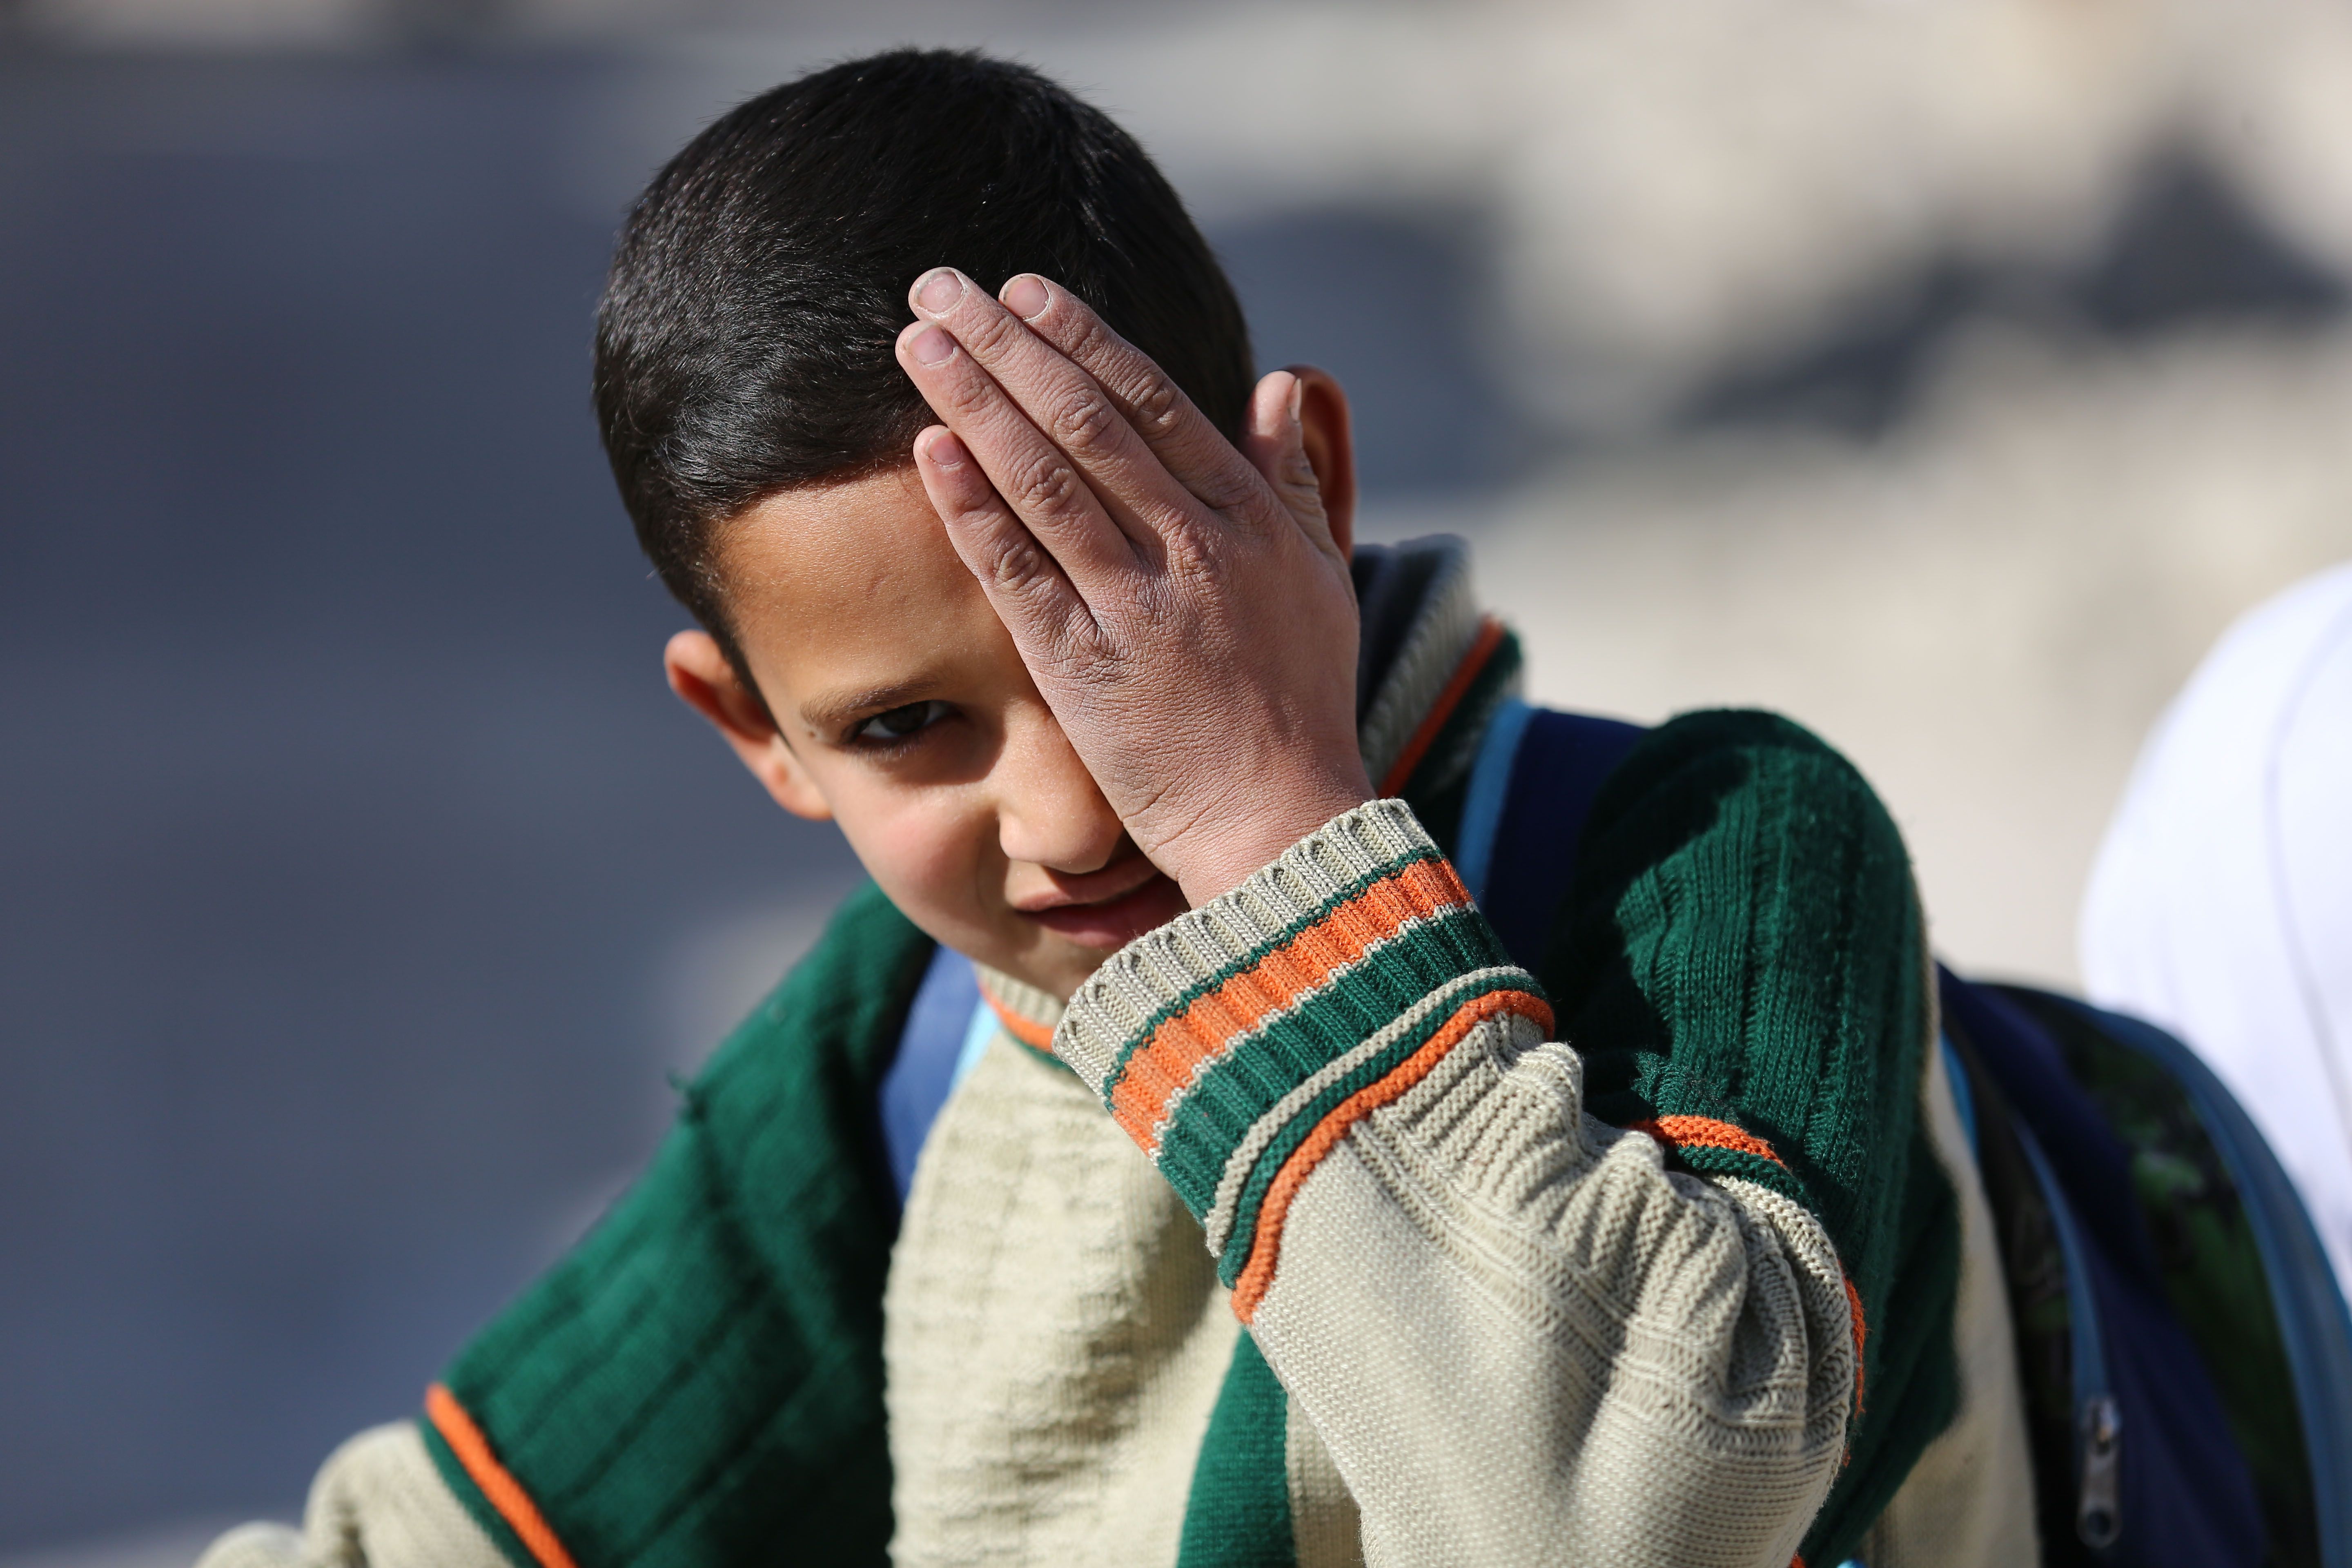 طالب سورى يشارك فى الحملة من أجل الطفل الذى فقد عينيه فى الغوطة